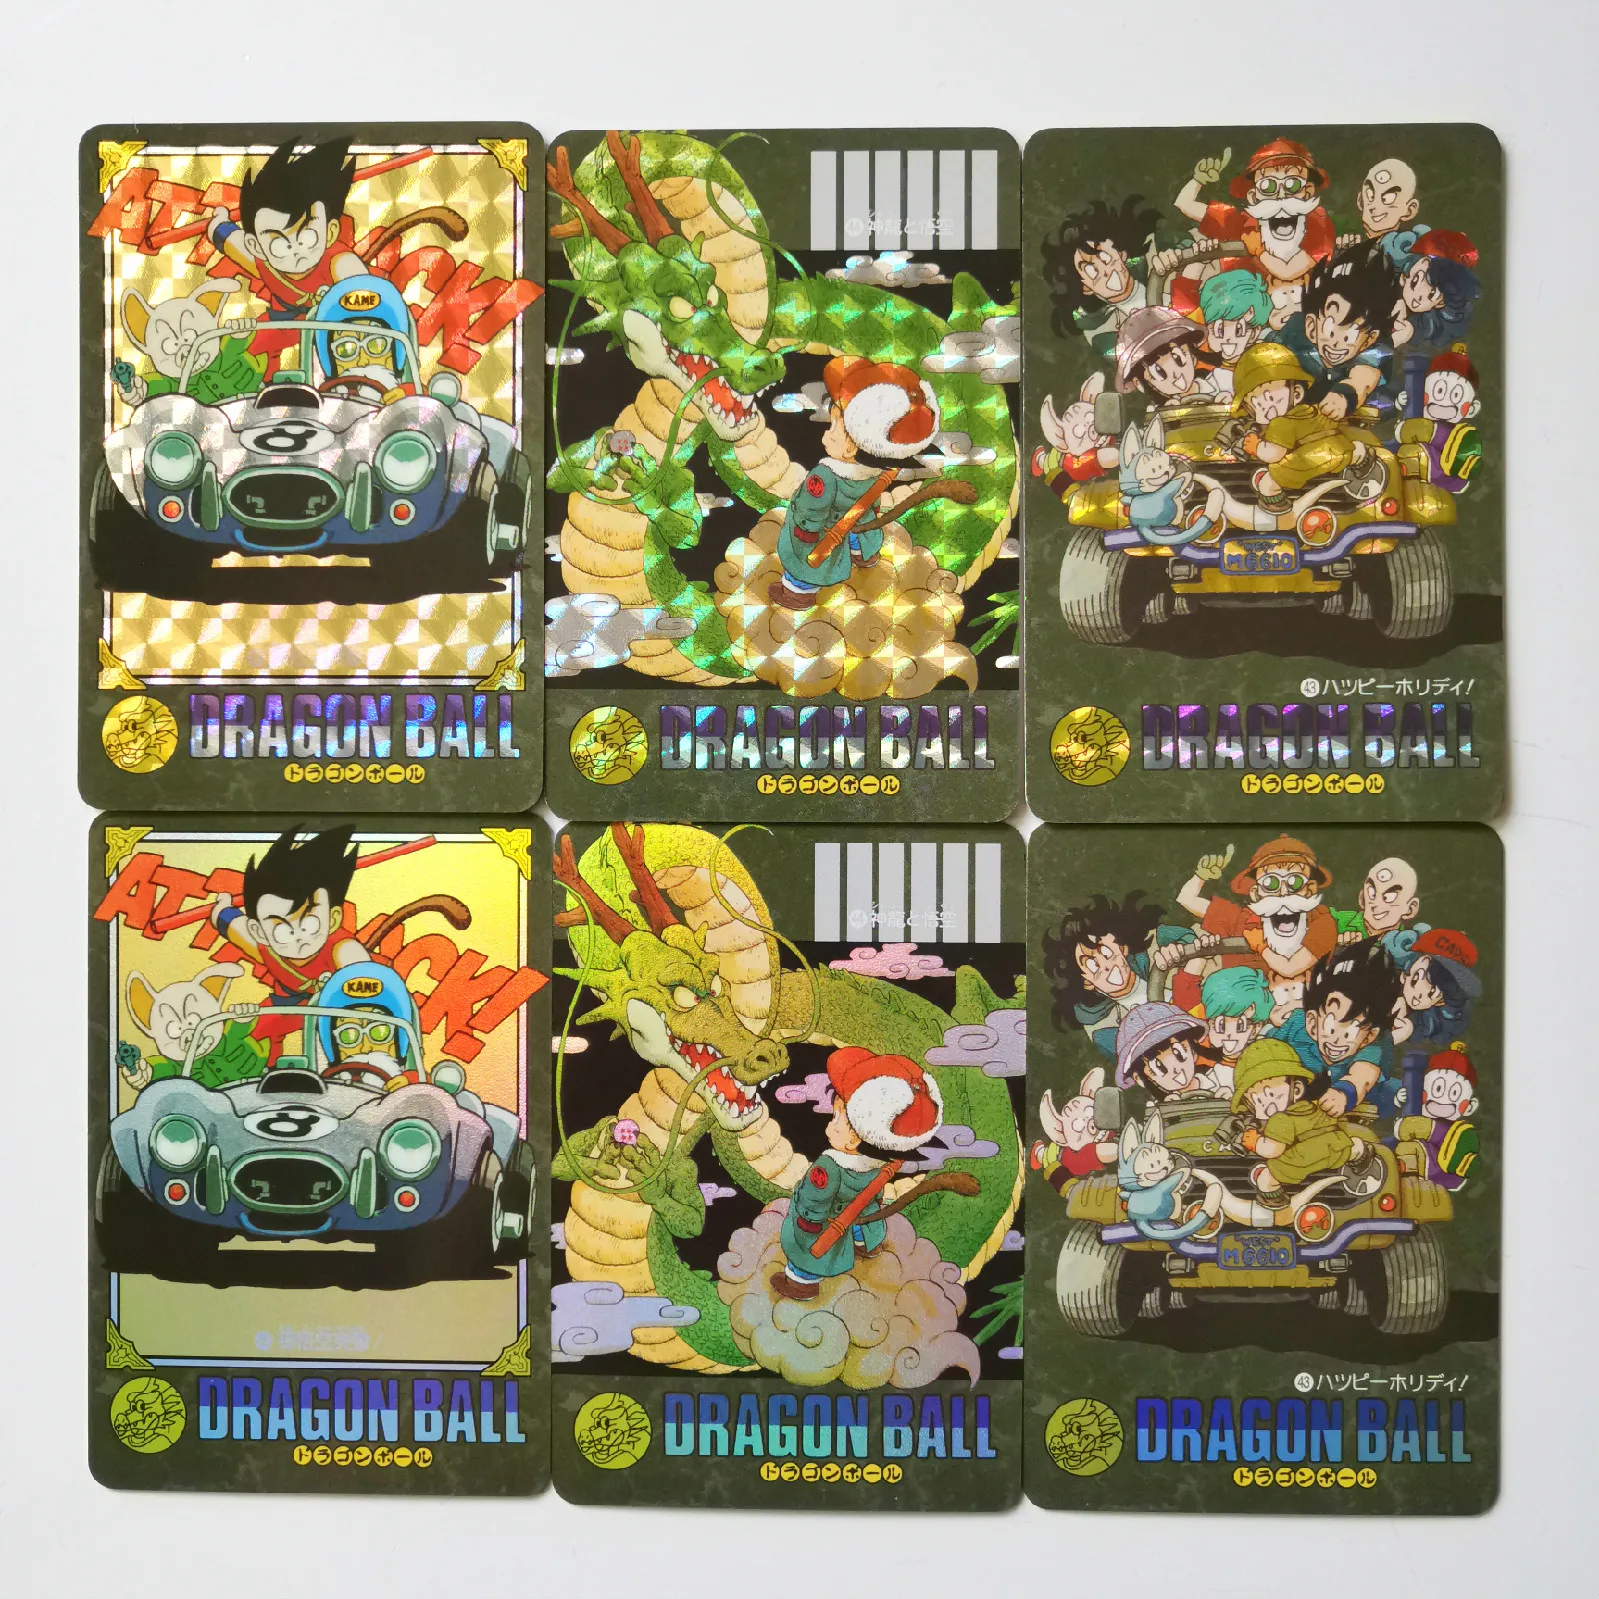 44 шт./компл. супер Dragon Ball Z тучи героев карточной ультра инстинкт персонажи Гоку, Веджета, игровая коллекция карт